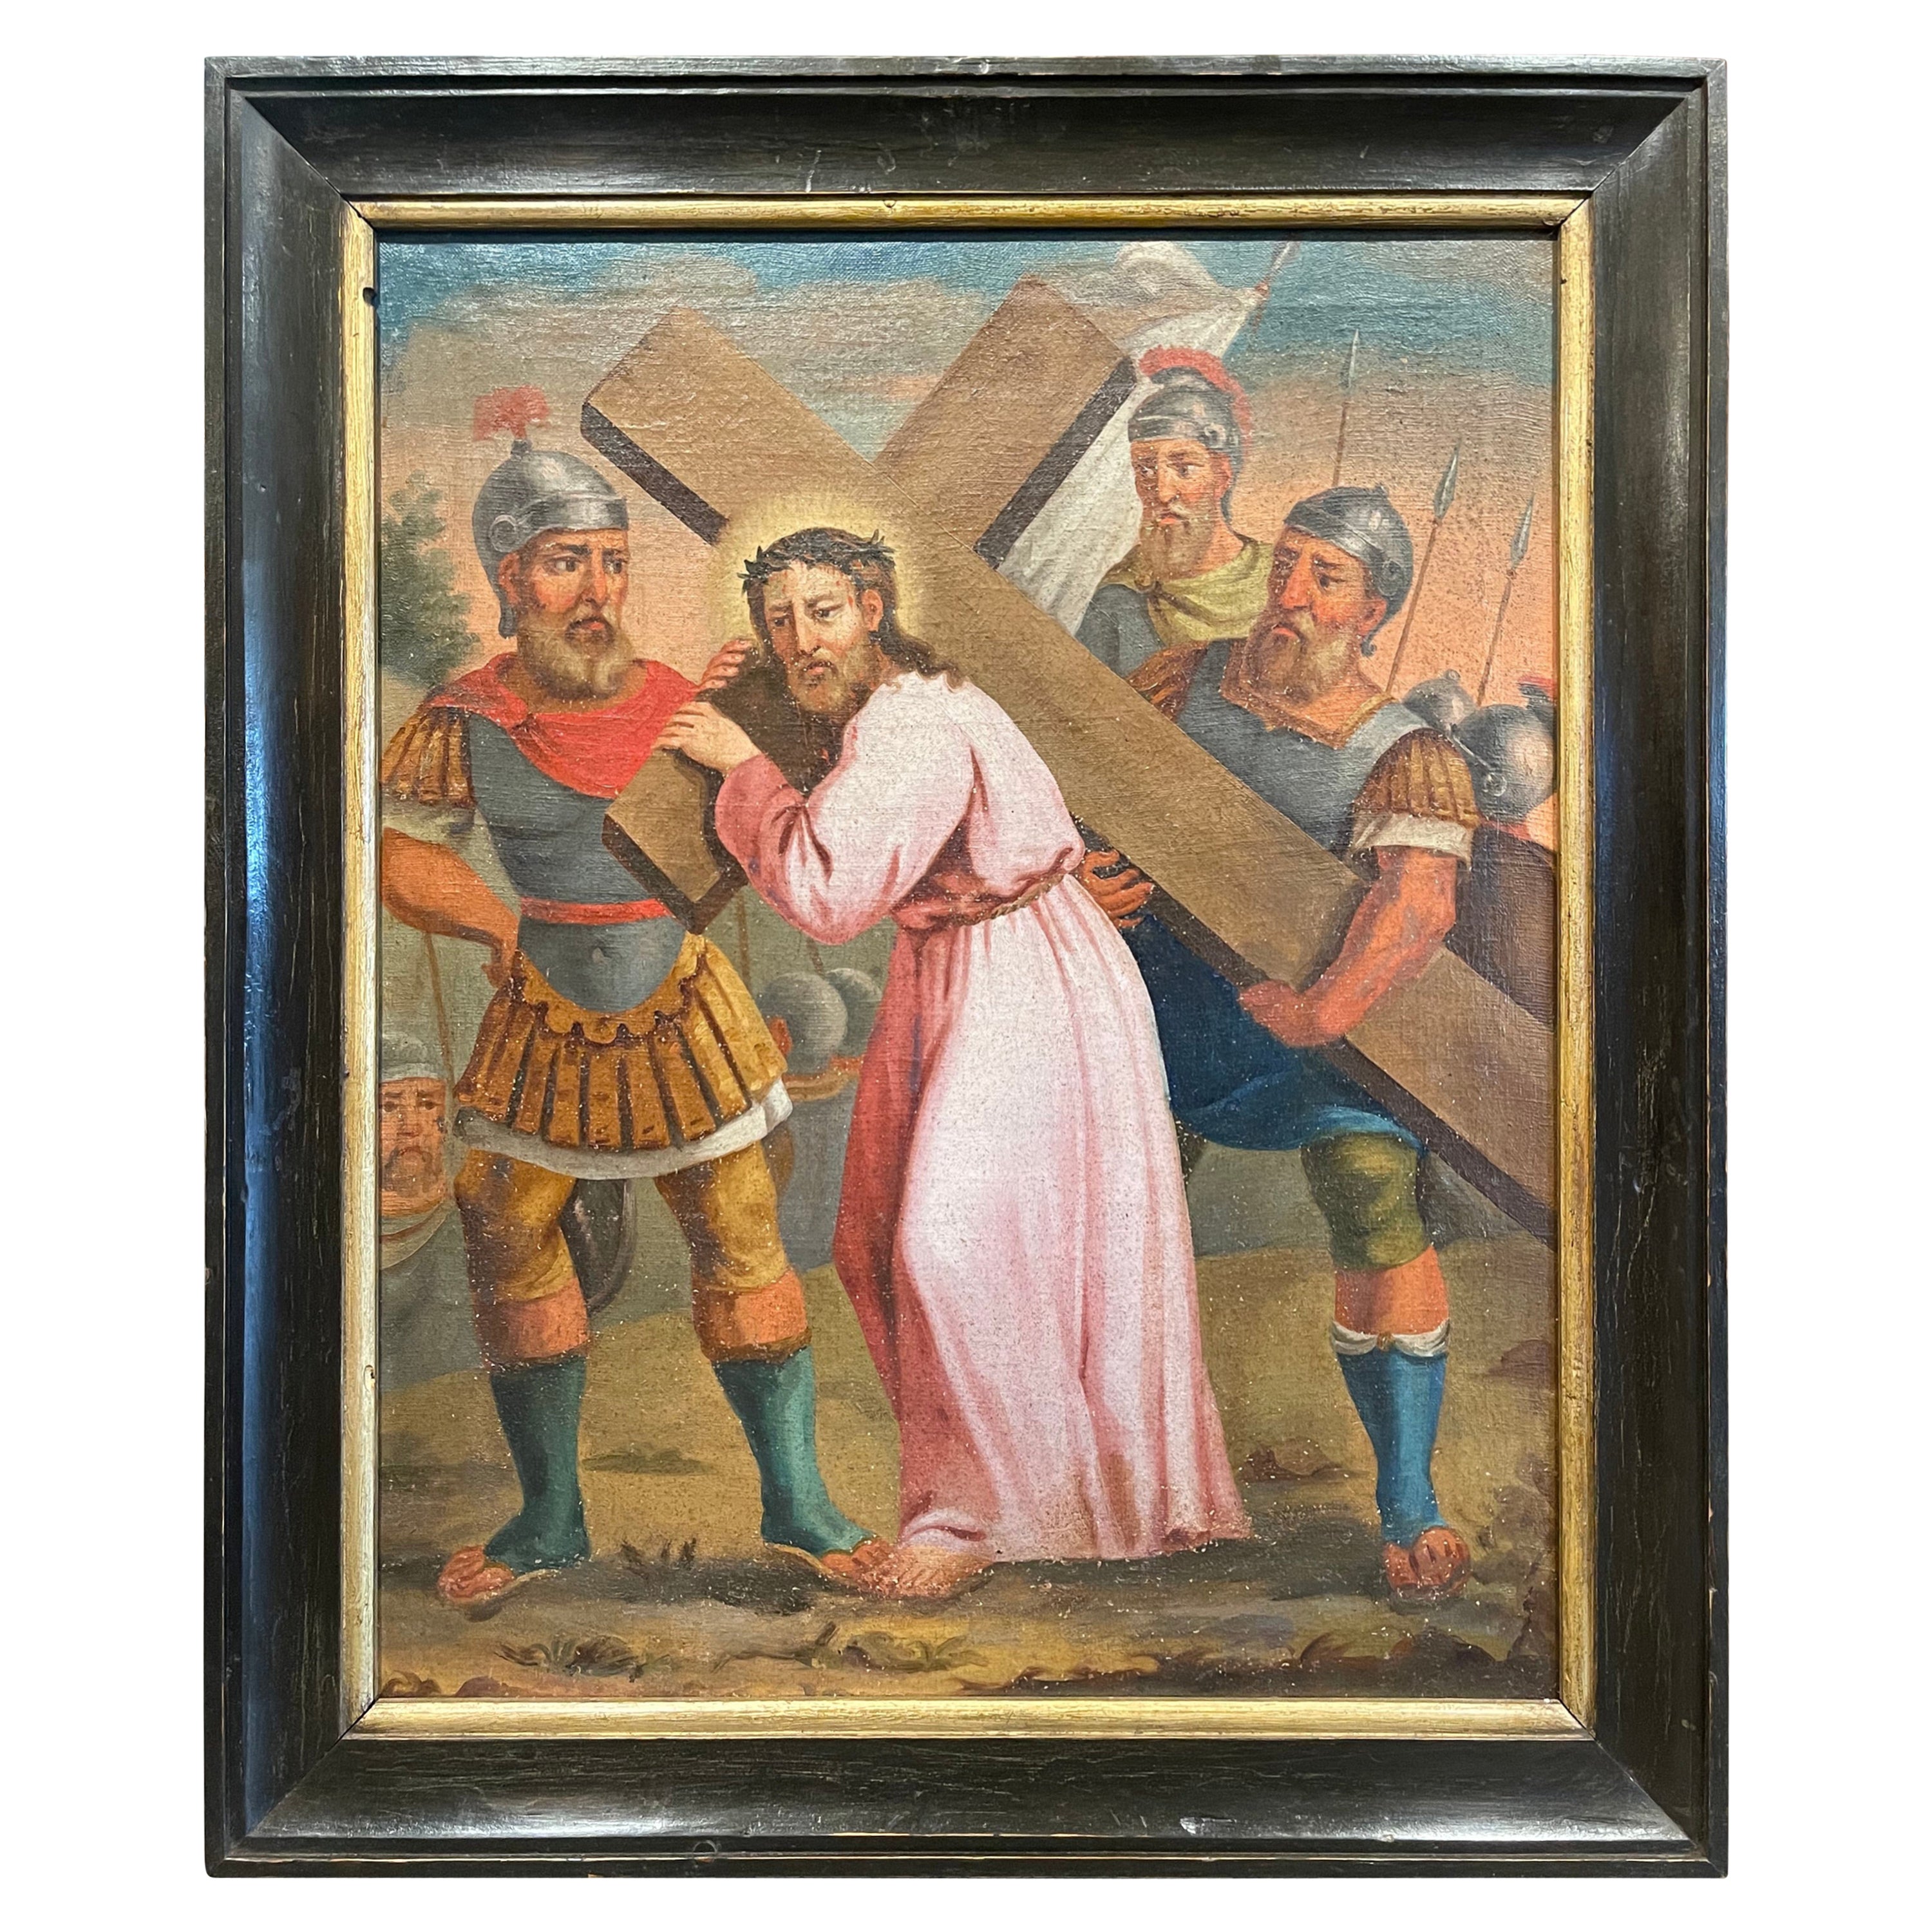 Französisches Ölgemälde auf Leinwand, 18. Jahrhundert, Gemälde „Der fünfte Station des Kreuzes“   